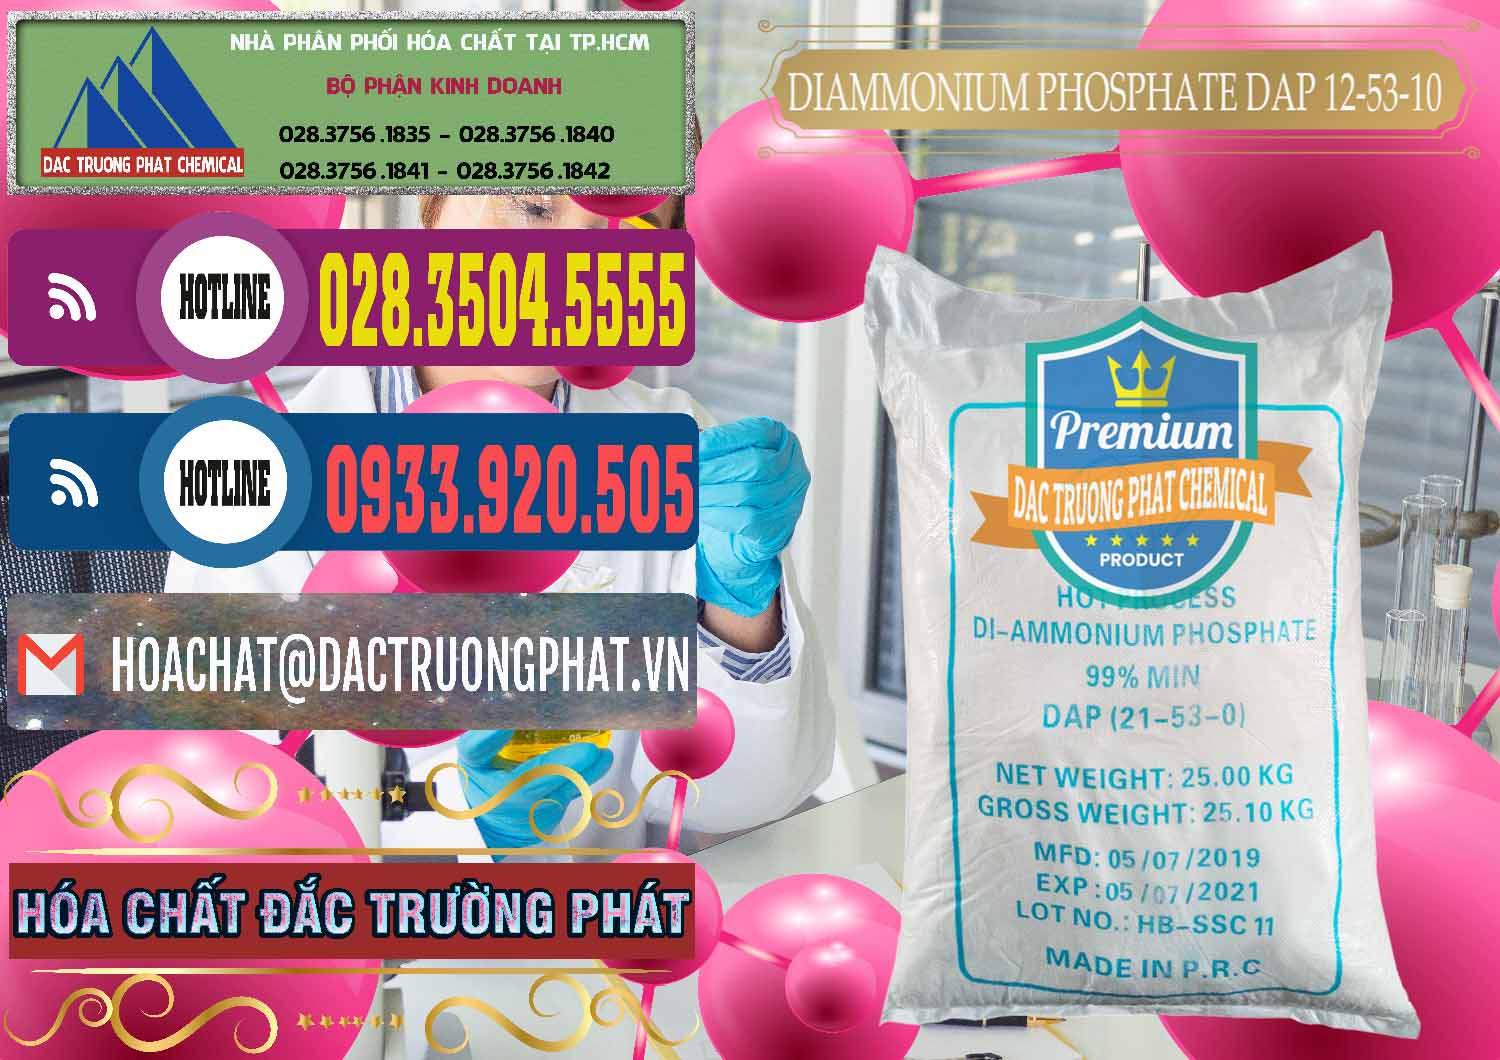 Cty chuyên phân phối và bán DAP - Diammonium Phosphate Trung Quốc China - 0319 - Cung cấp và kinh doanh hóa chất tại TP.HCM - muabanhoachat.com.vn